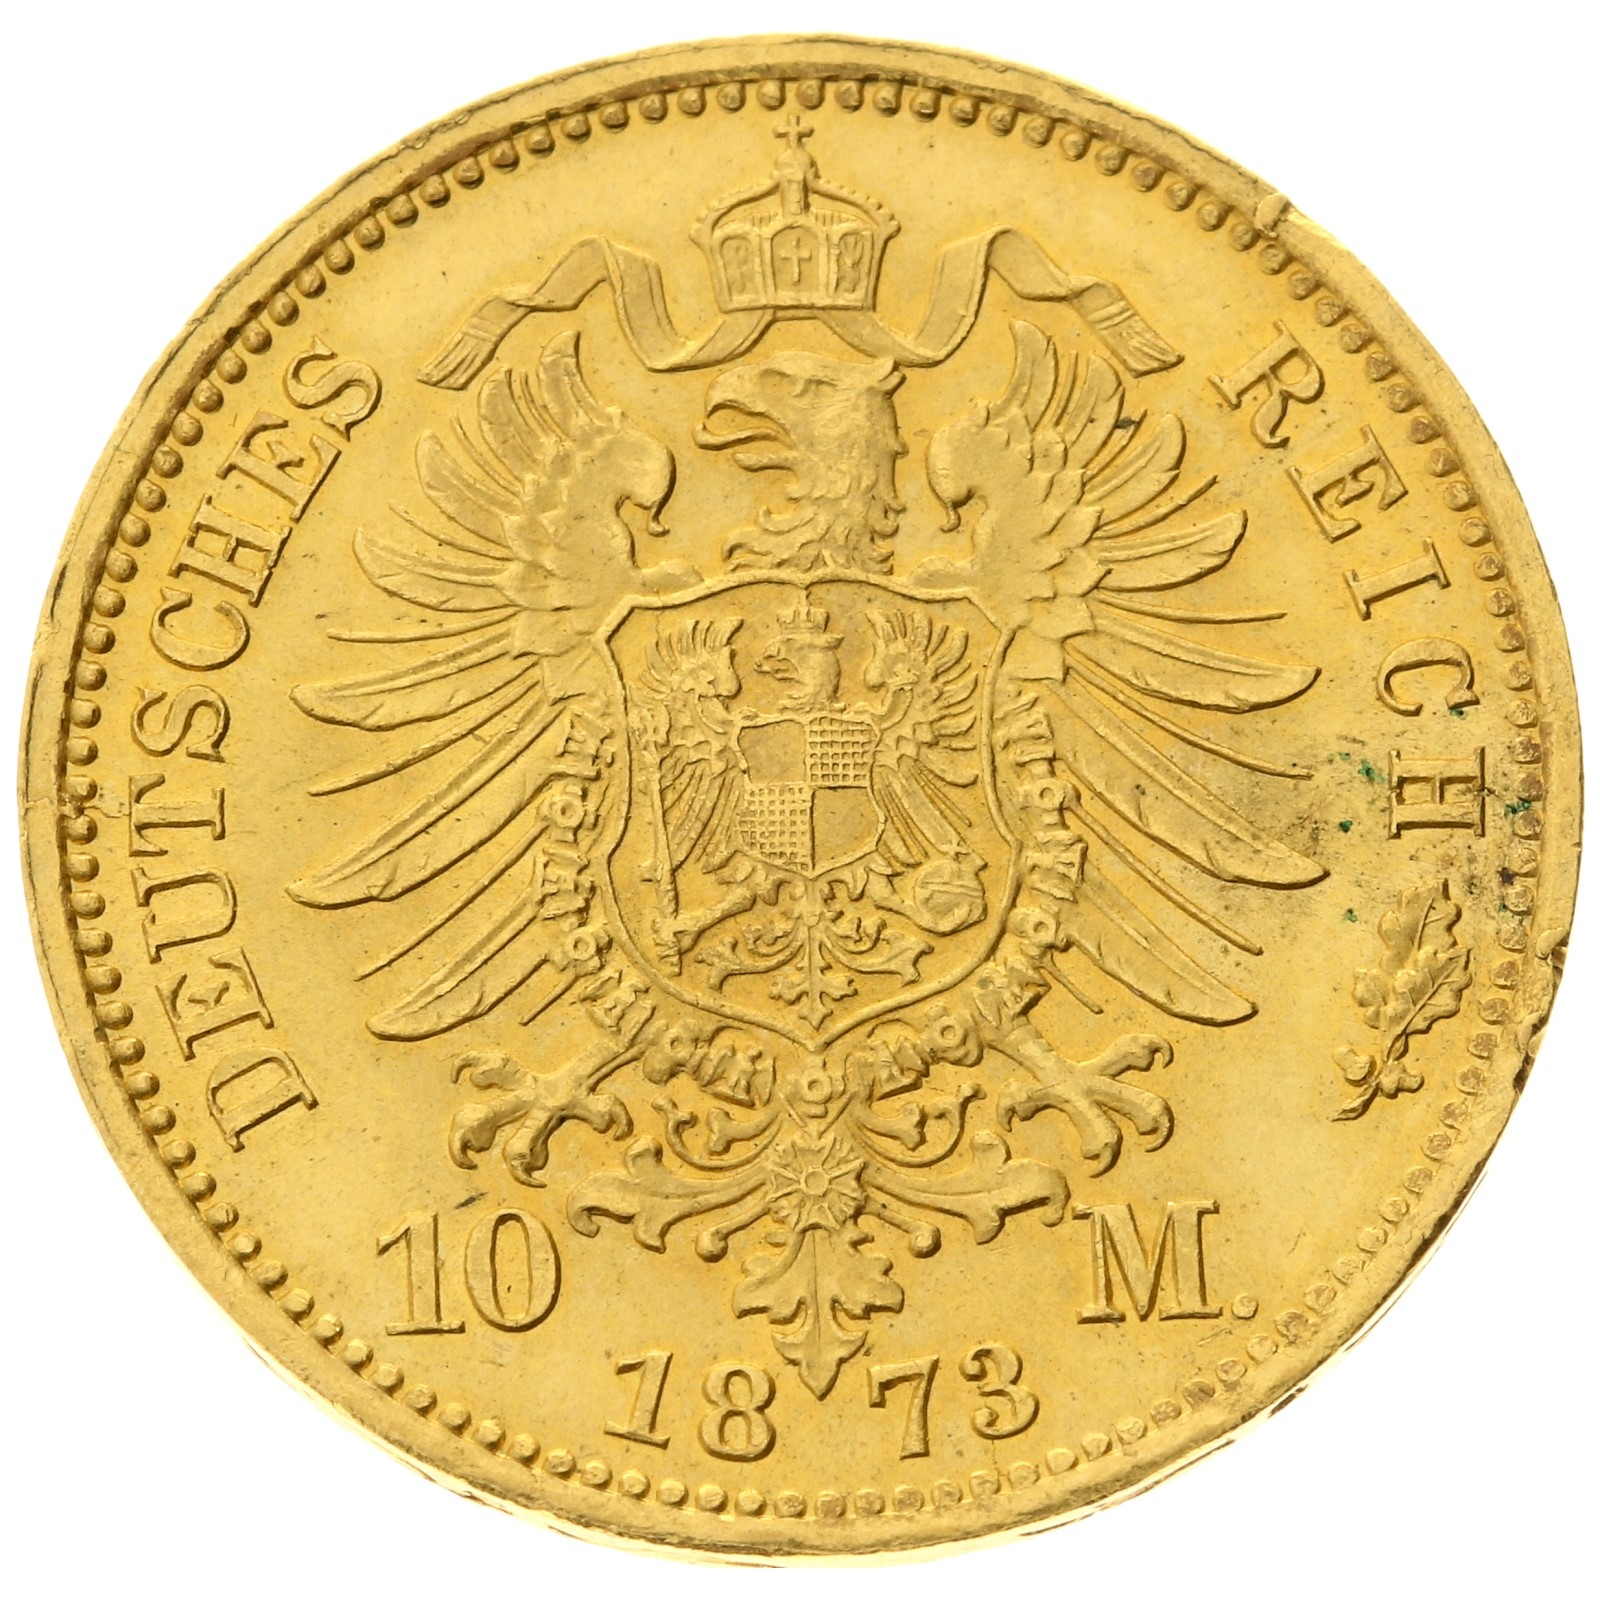 Germany - Prussia - 10 mark - 1873 - A - Wilhelm I 